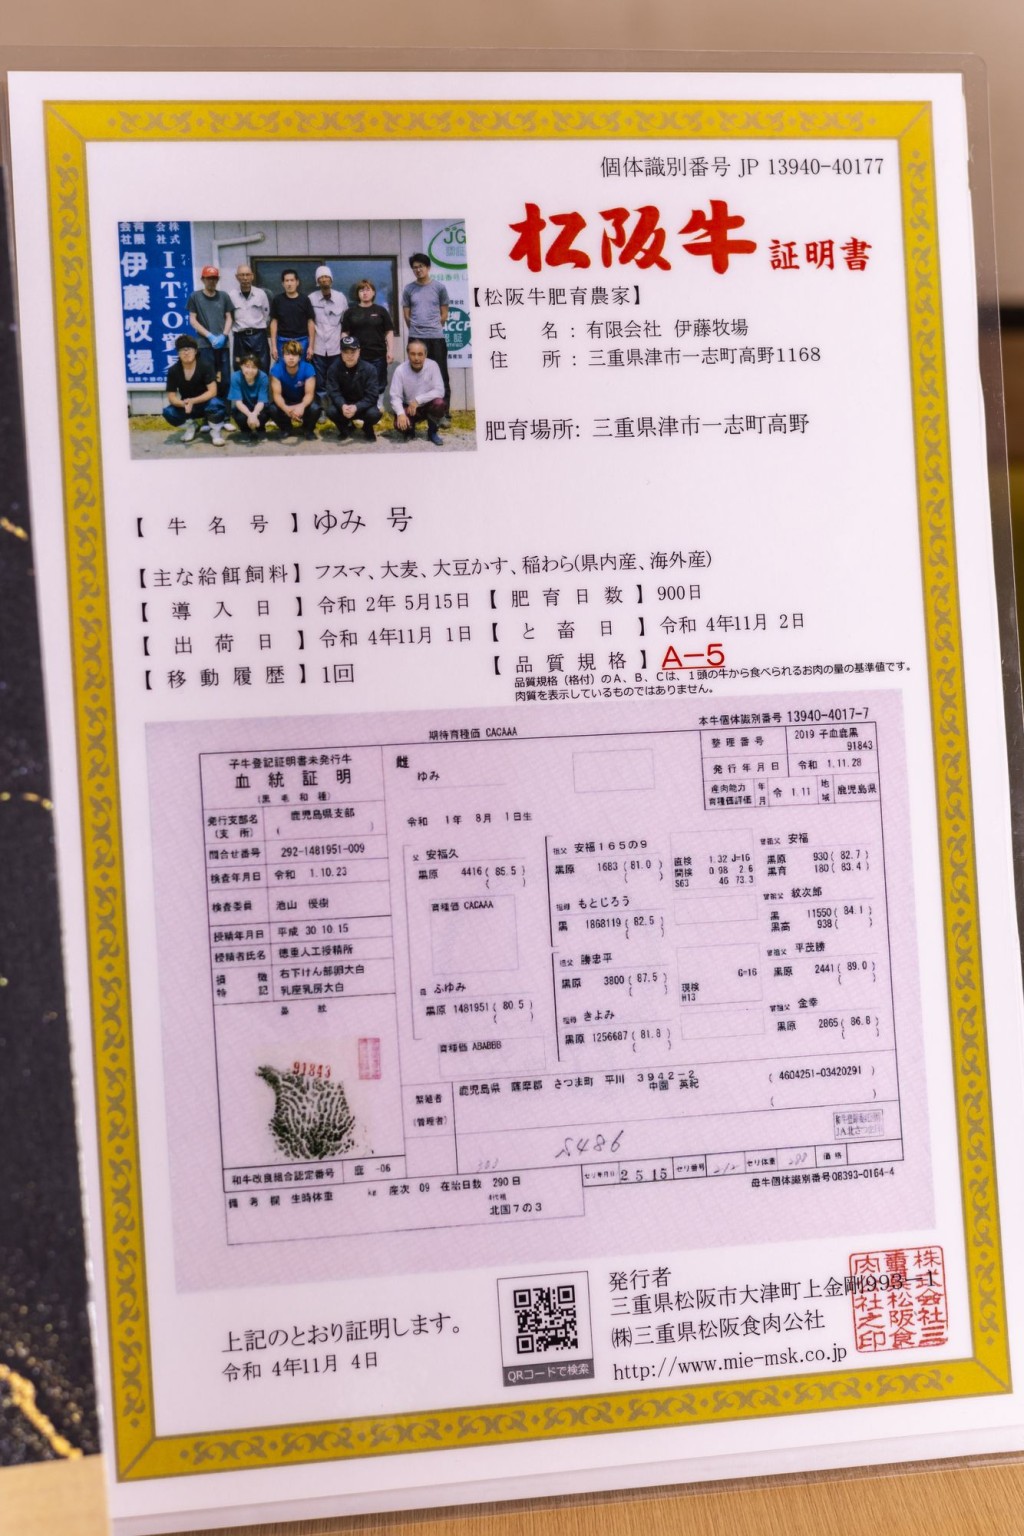 每頭松阪牛均需於「松阪牛個體識別管理系統」上登記，並配有官方頒發的松阪牛證明書